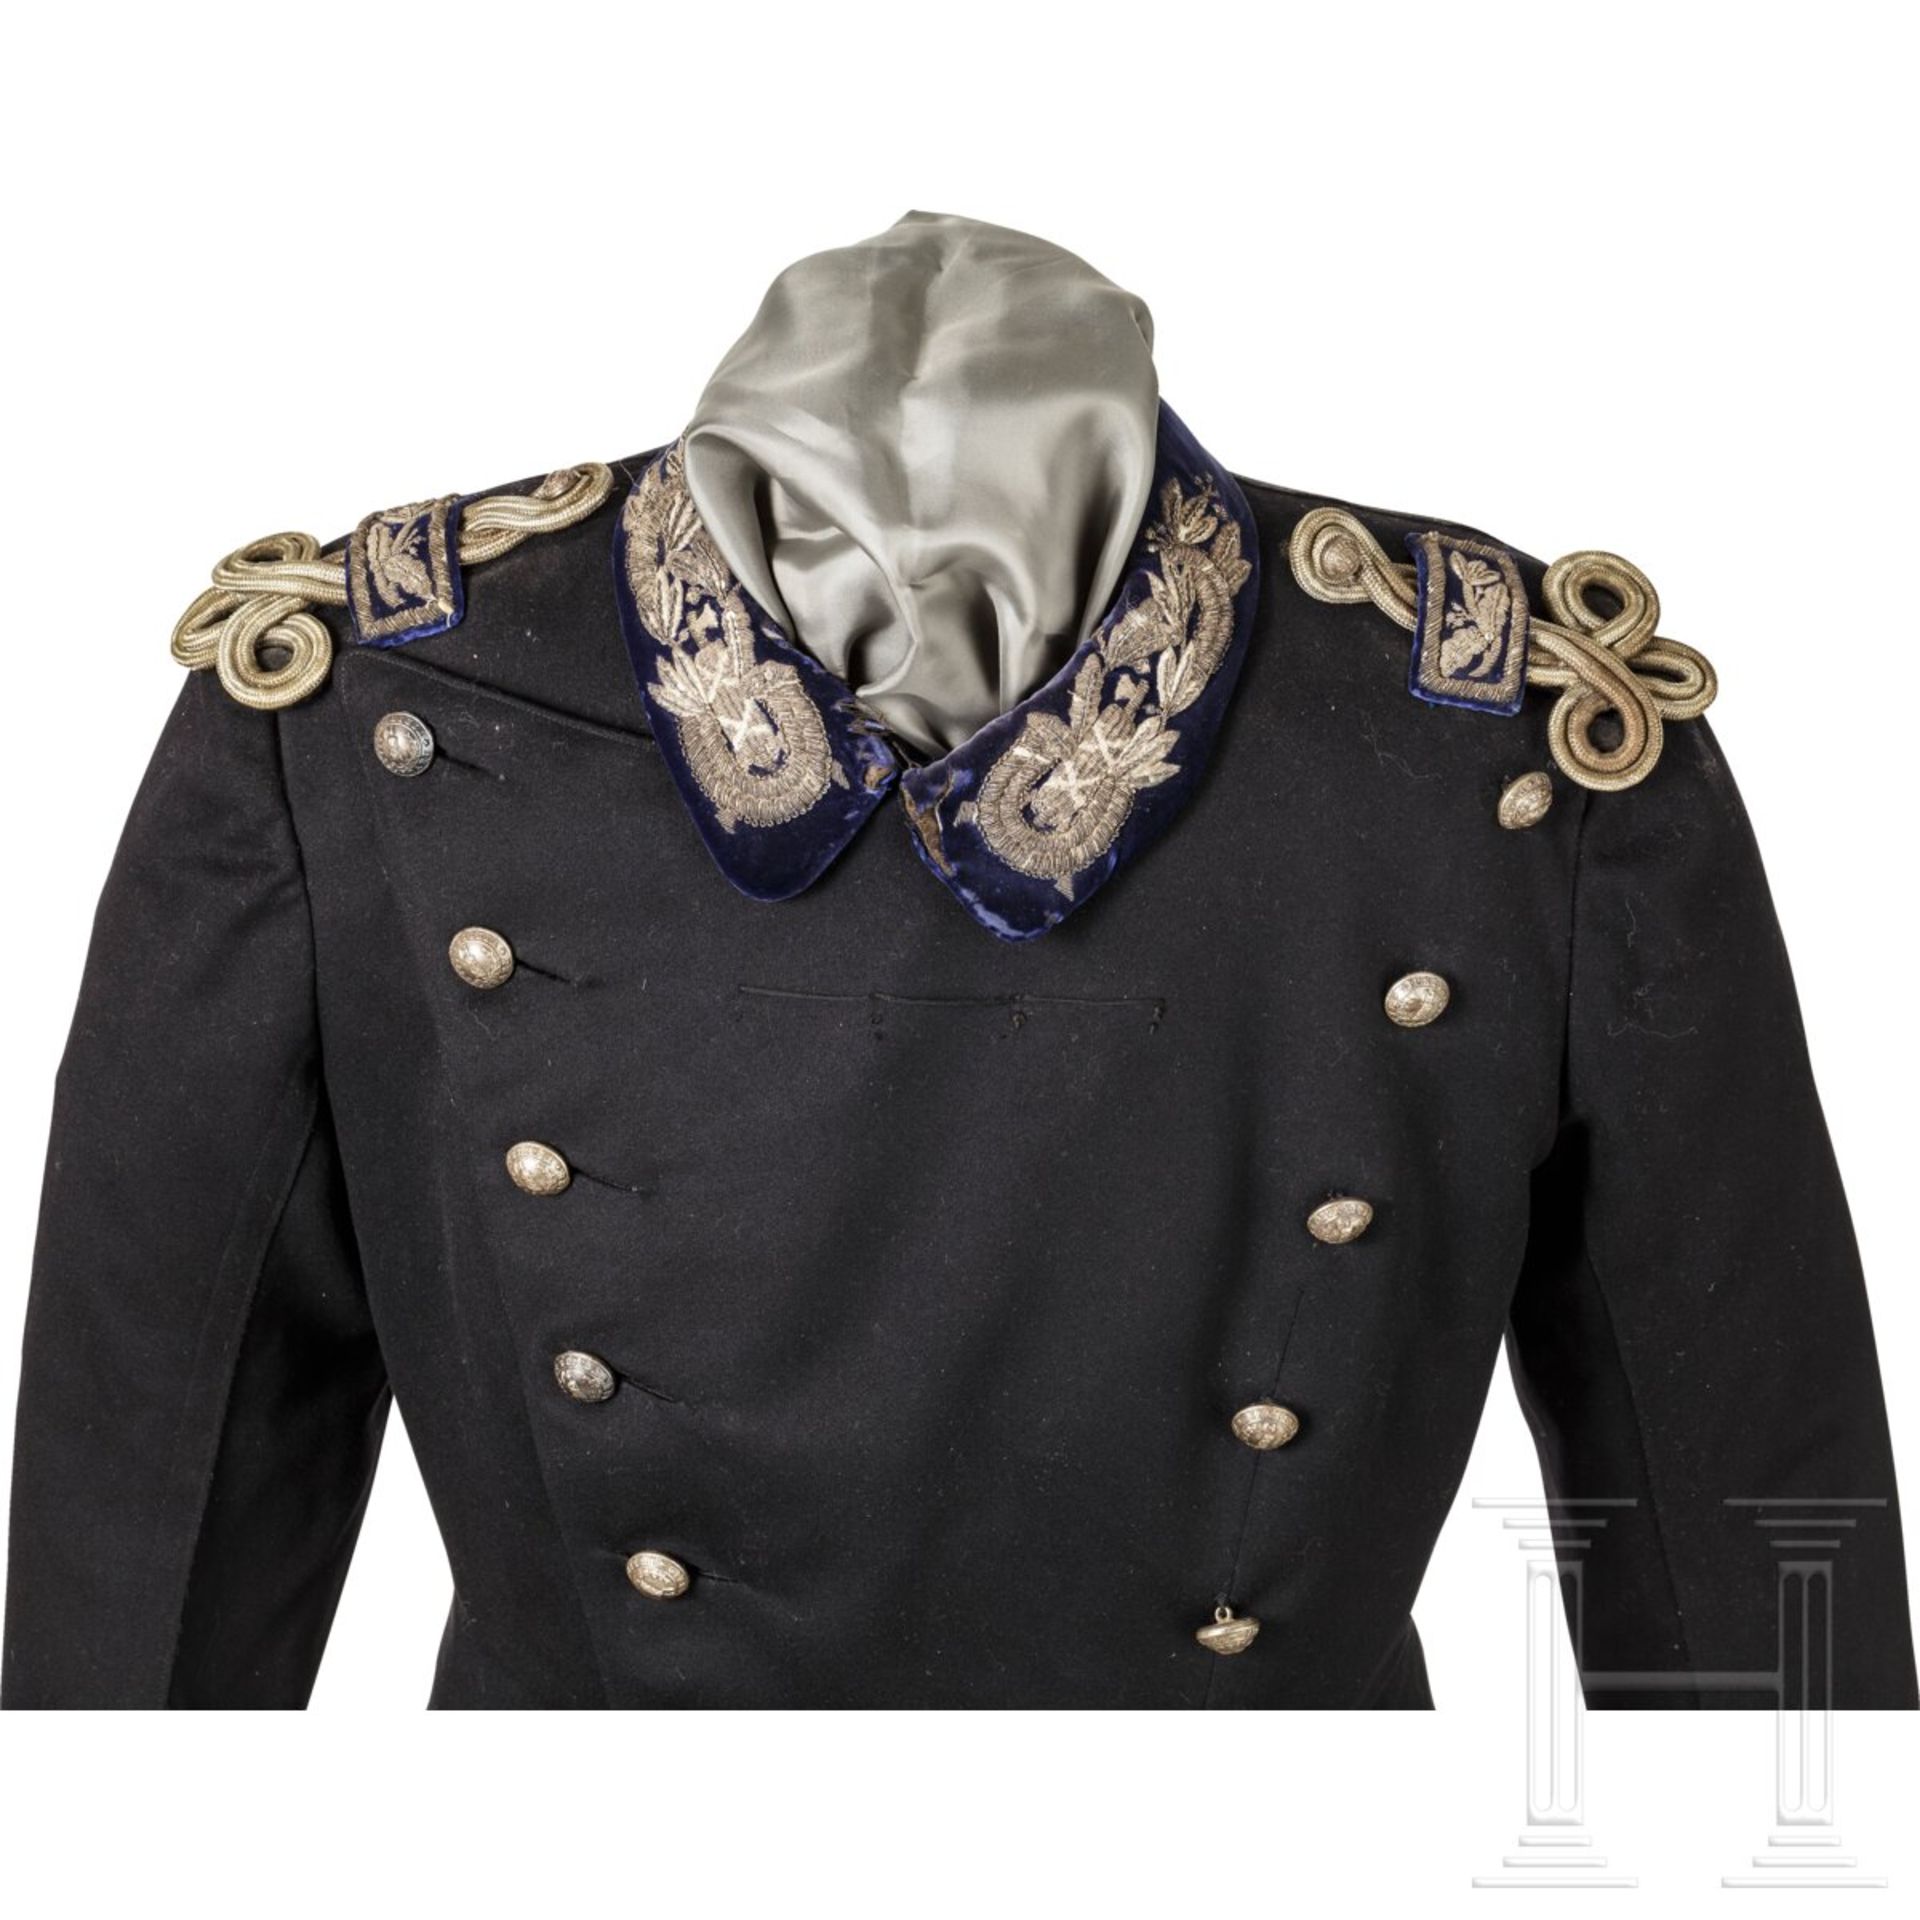 Uniform für einen Angehörigen der Militärjustiz, um 1900 - Image 2 of 5